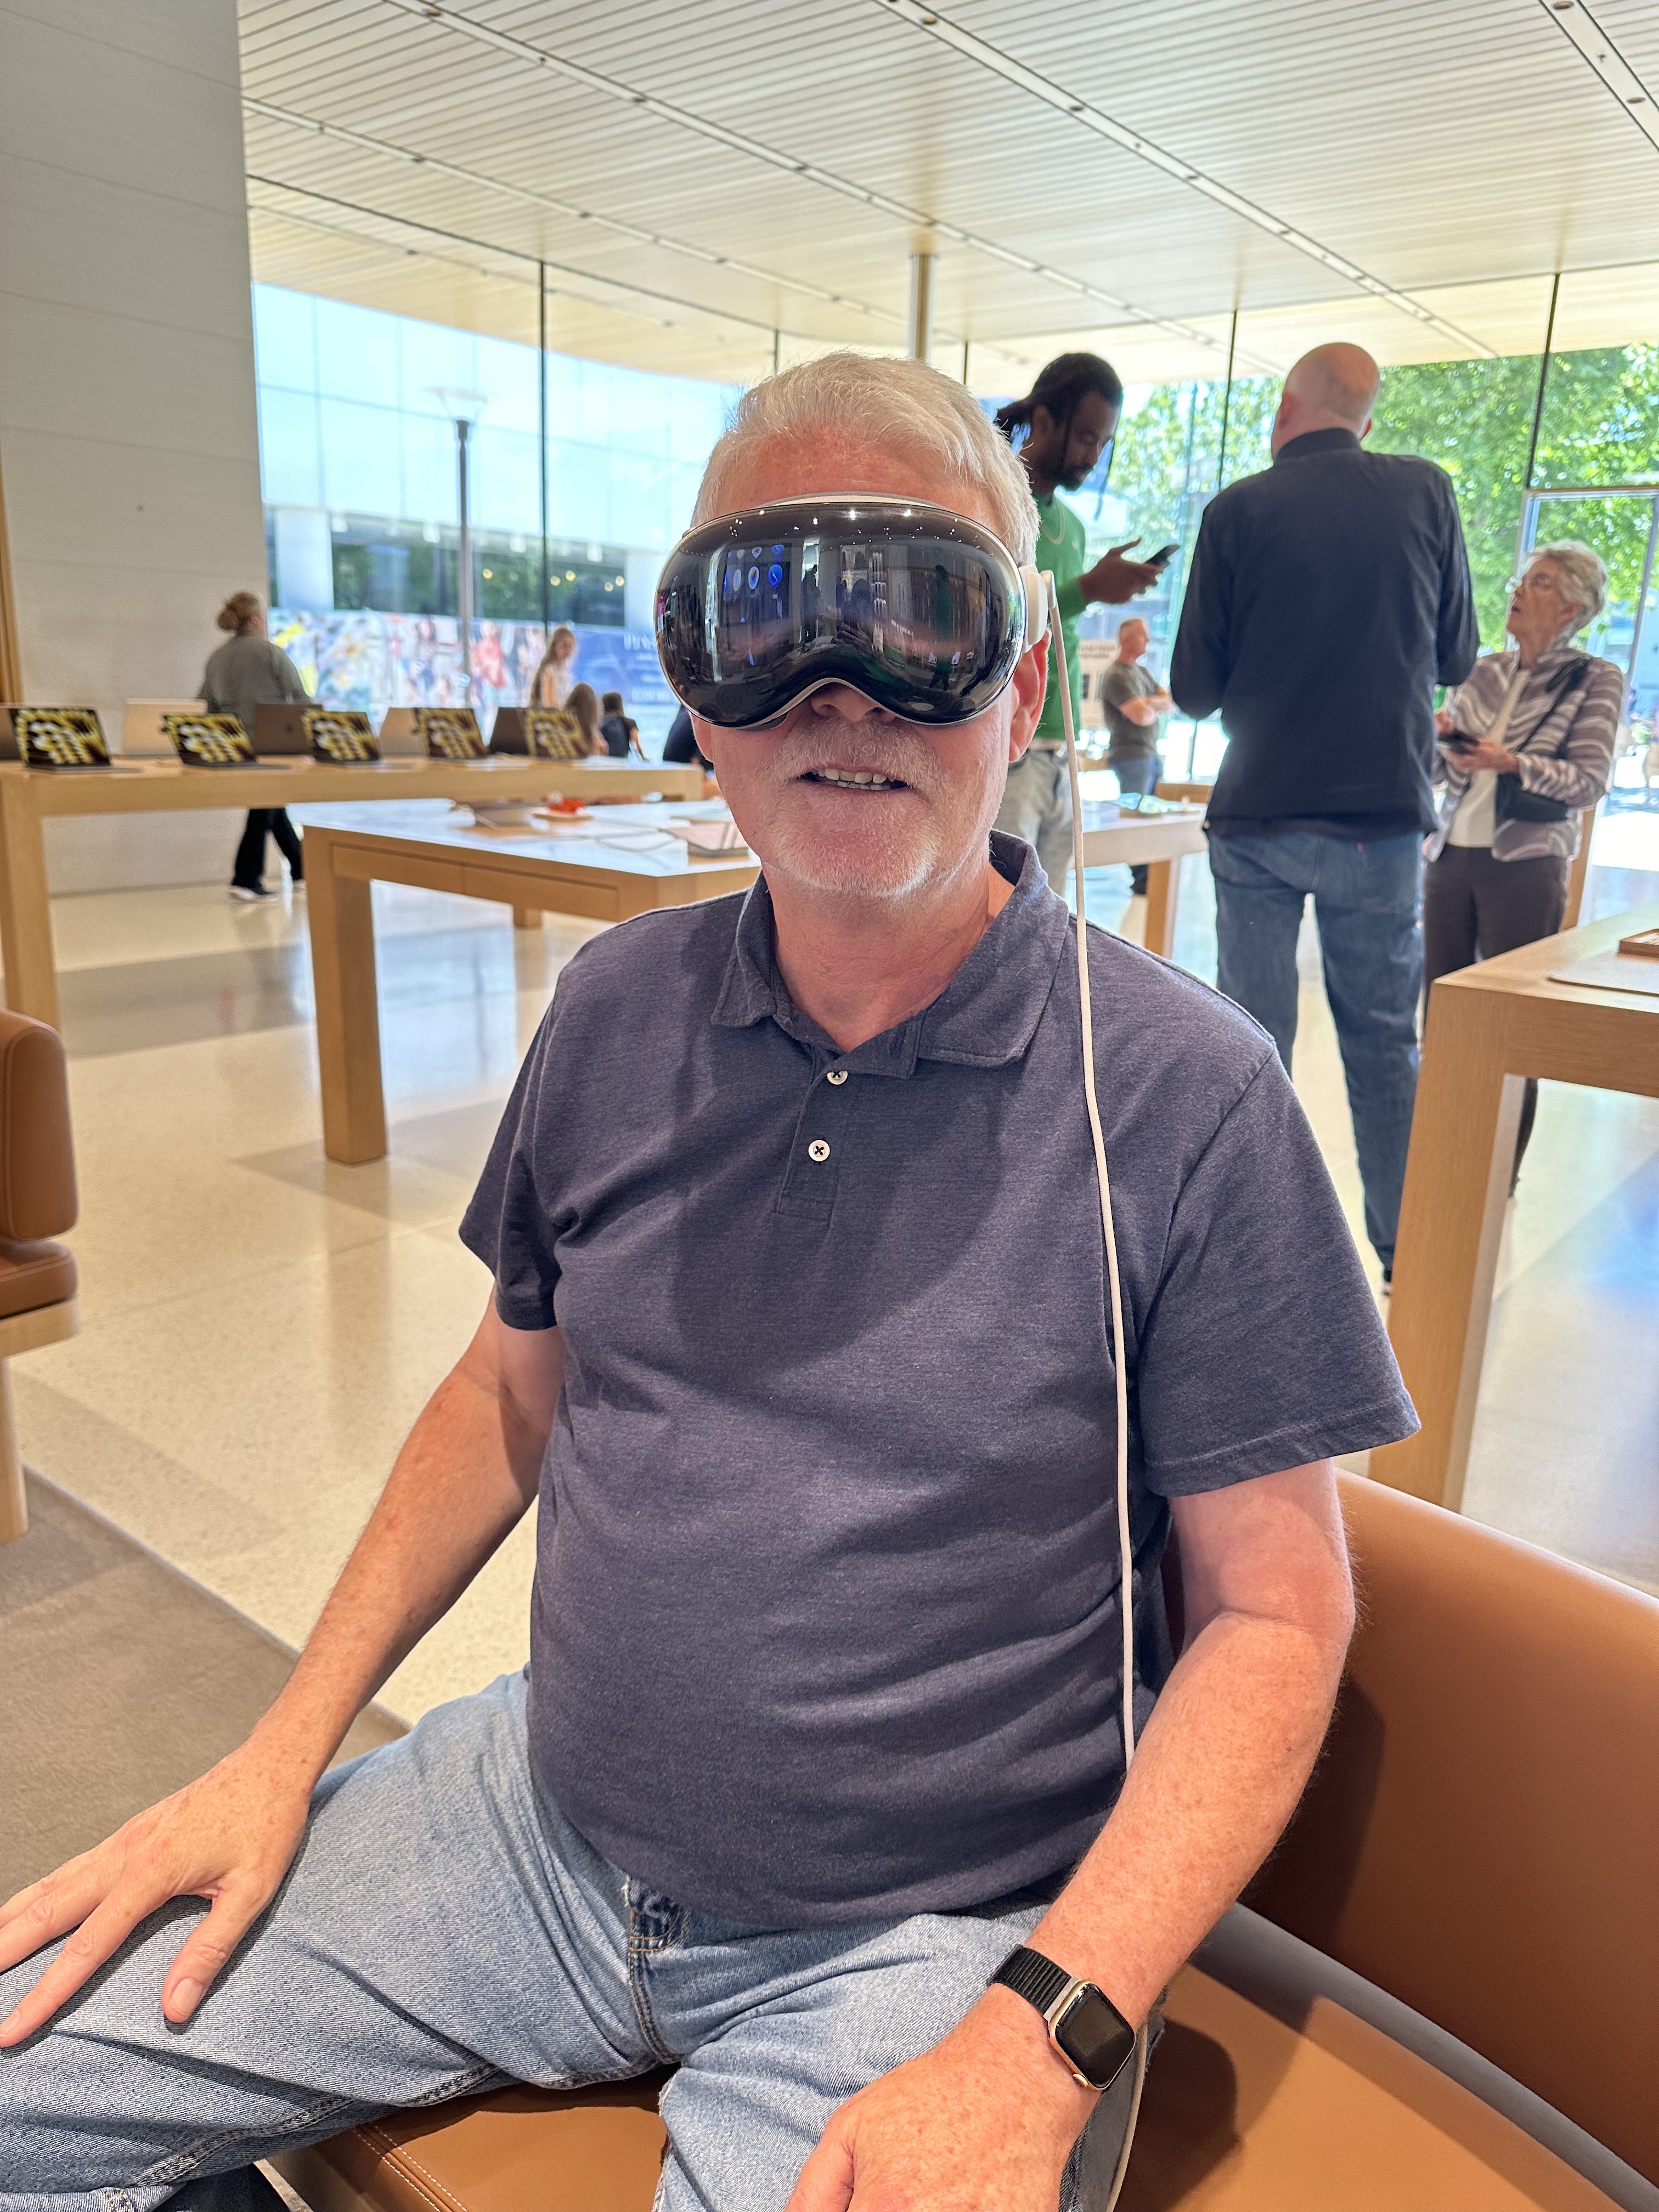 Mr. Briccetti Tries the Apple Vision Pro